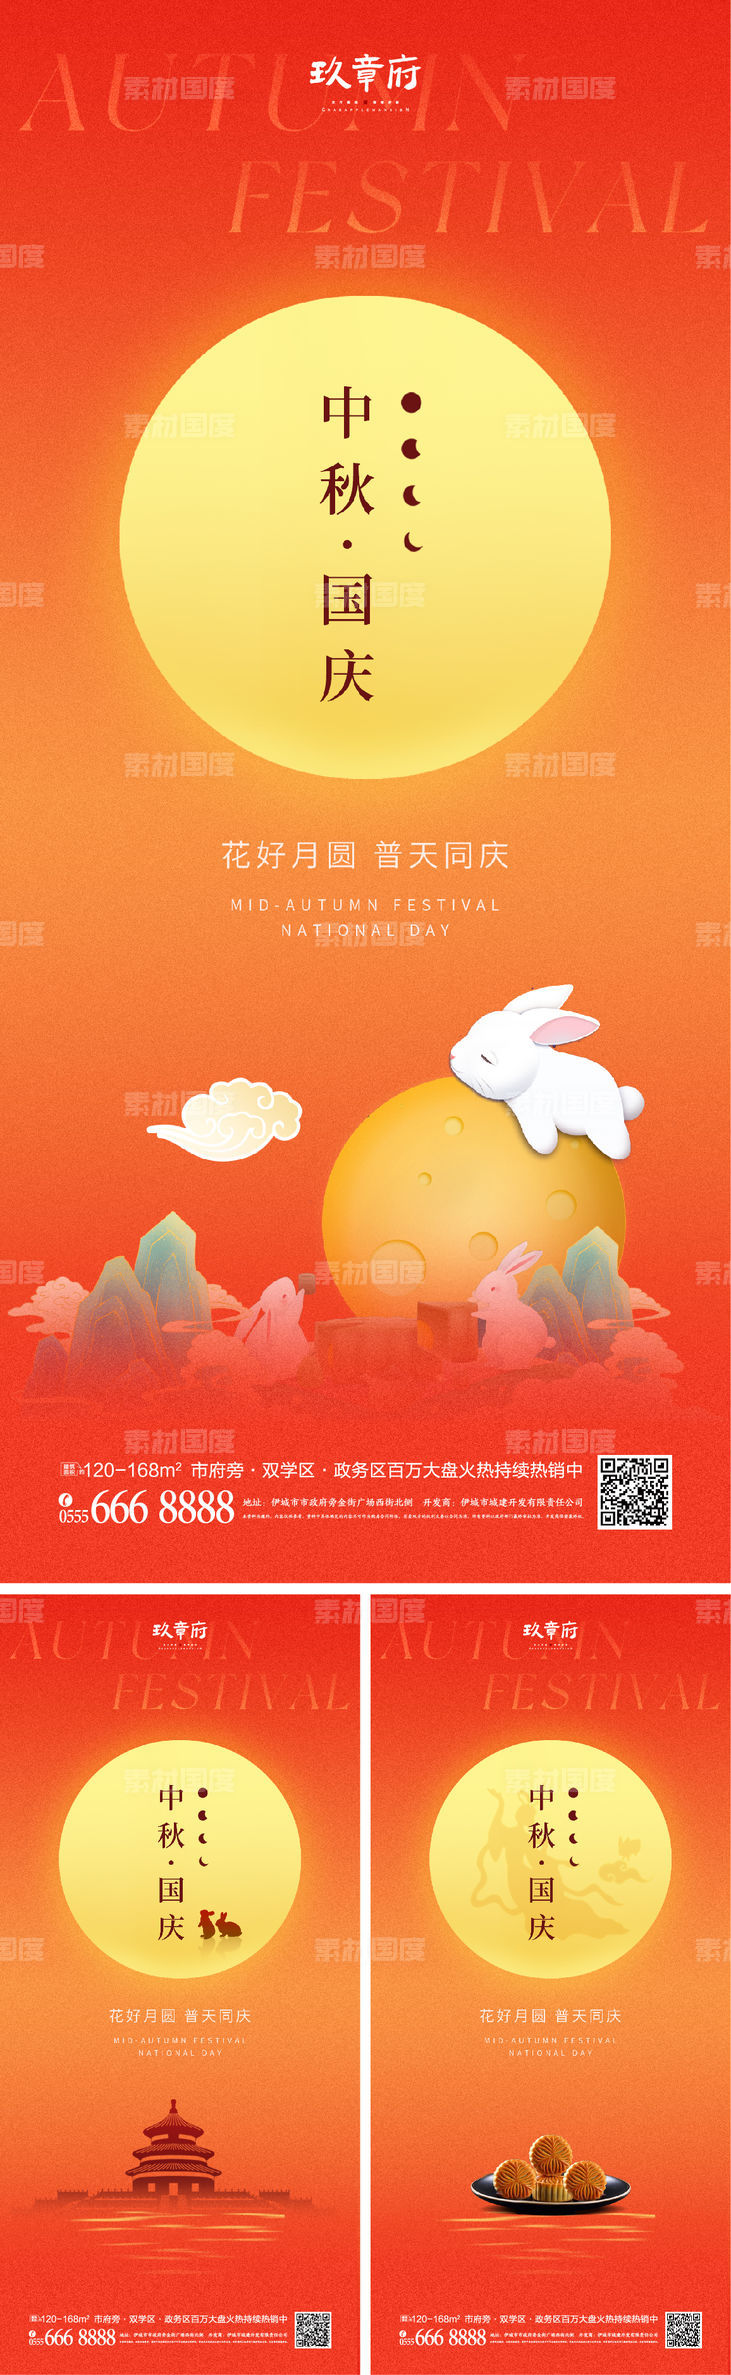 中秋节 国庆节 月亮 兔子 天坛 剪影 